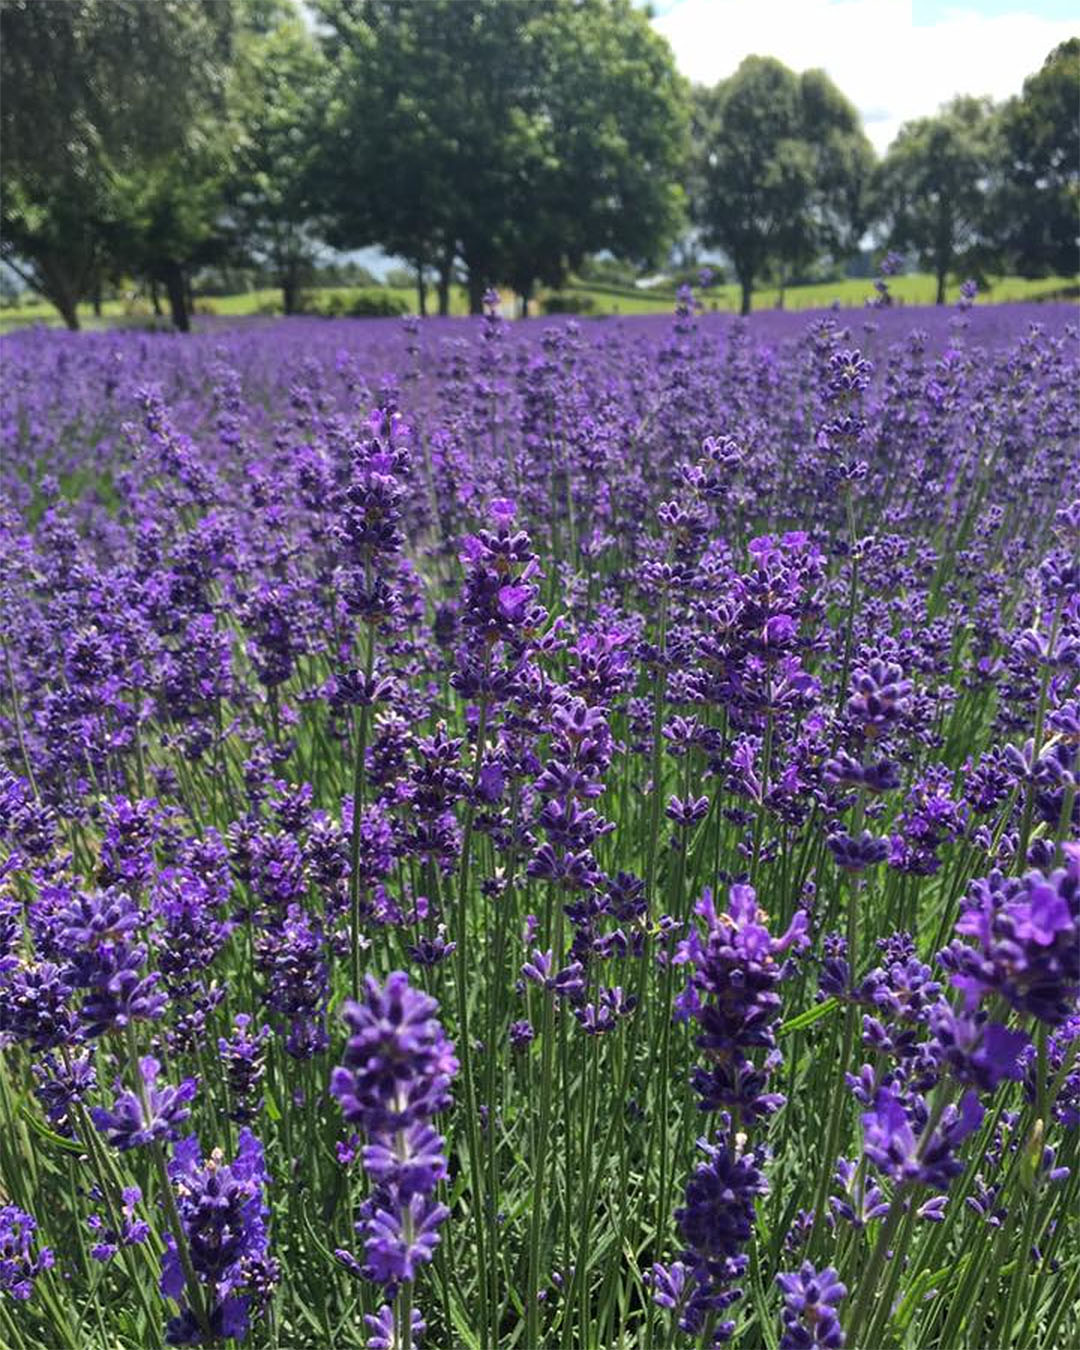 A sea of lavender at Alphra Lavender farm in Kihikihi.